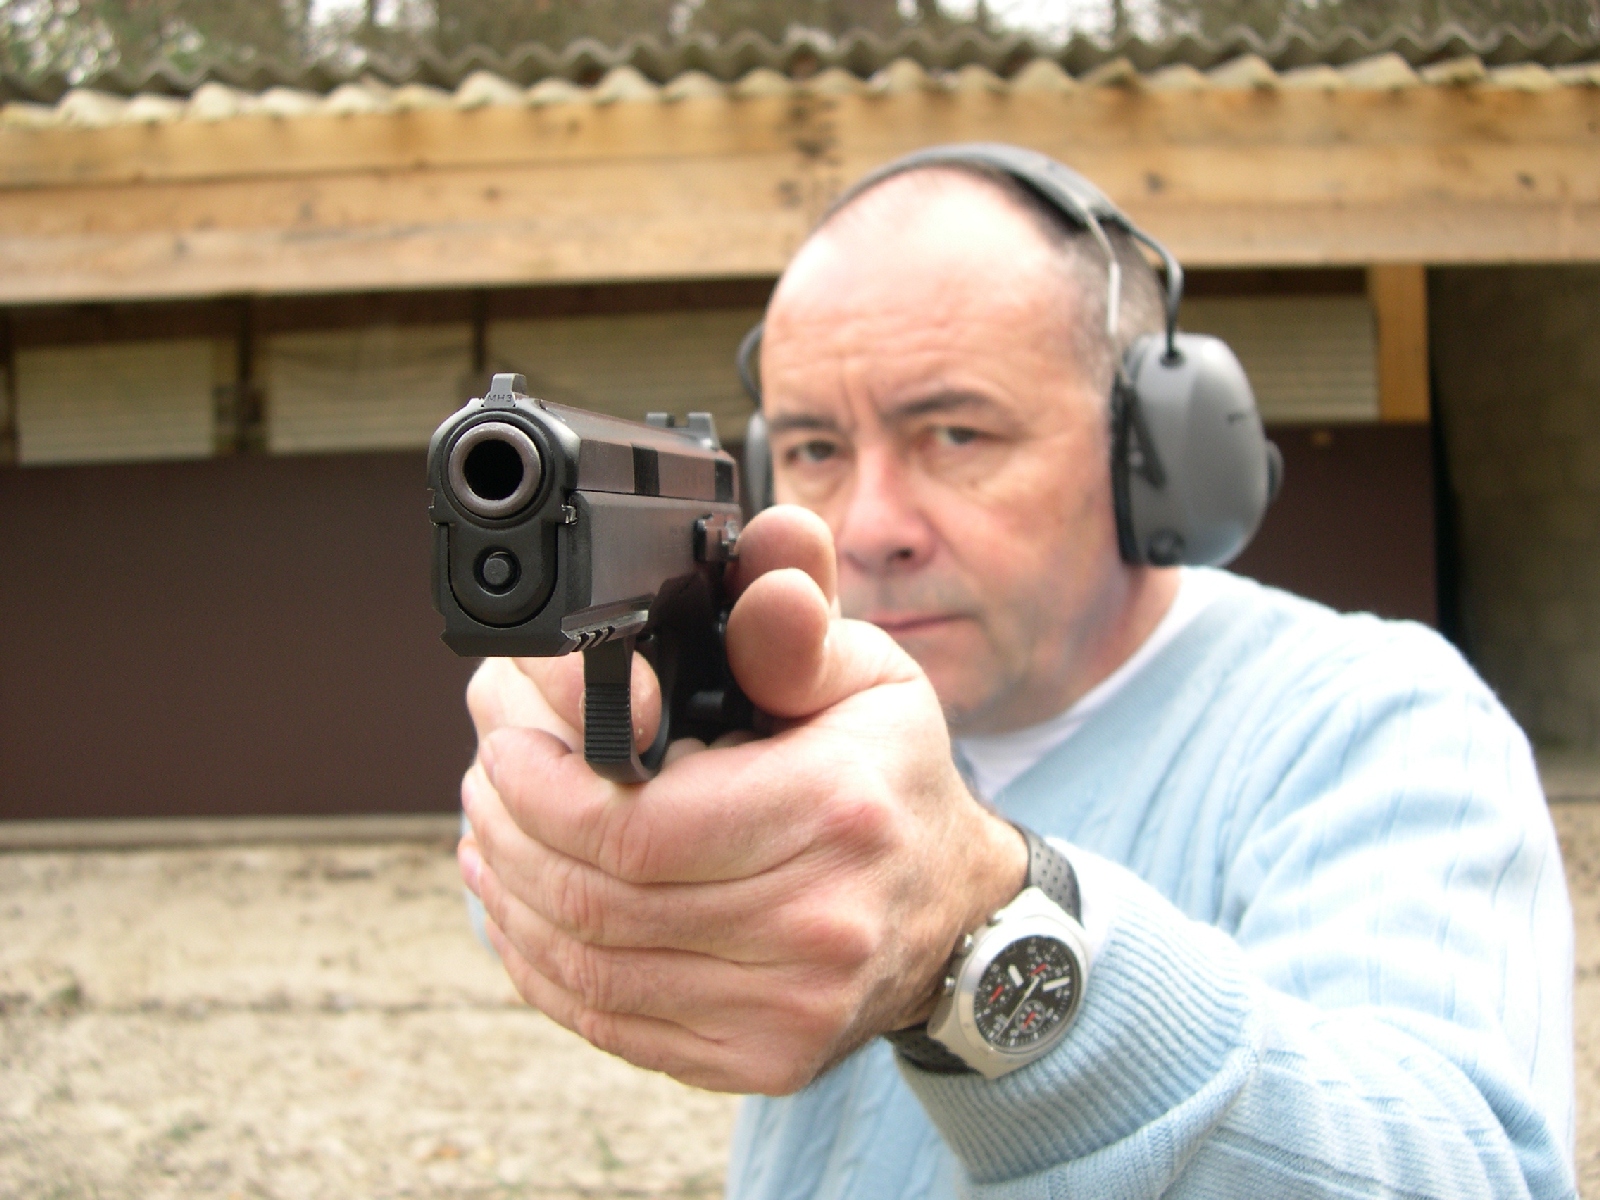 Pistolet CZ 75 modèle SP-01 en calibre 9 mm Parabellum lors de notre banc d'essai réalisé en 2006.